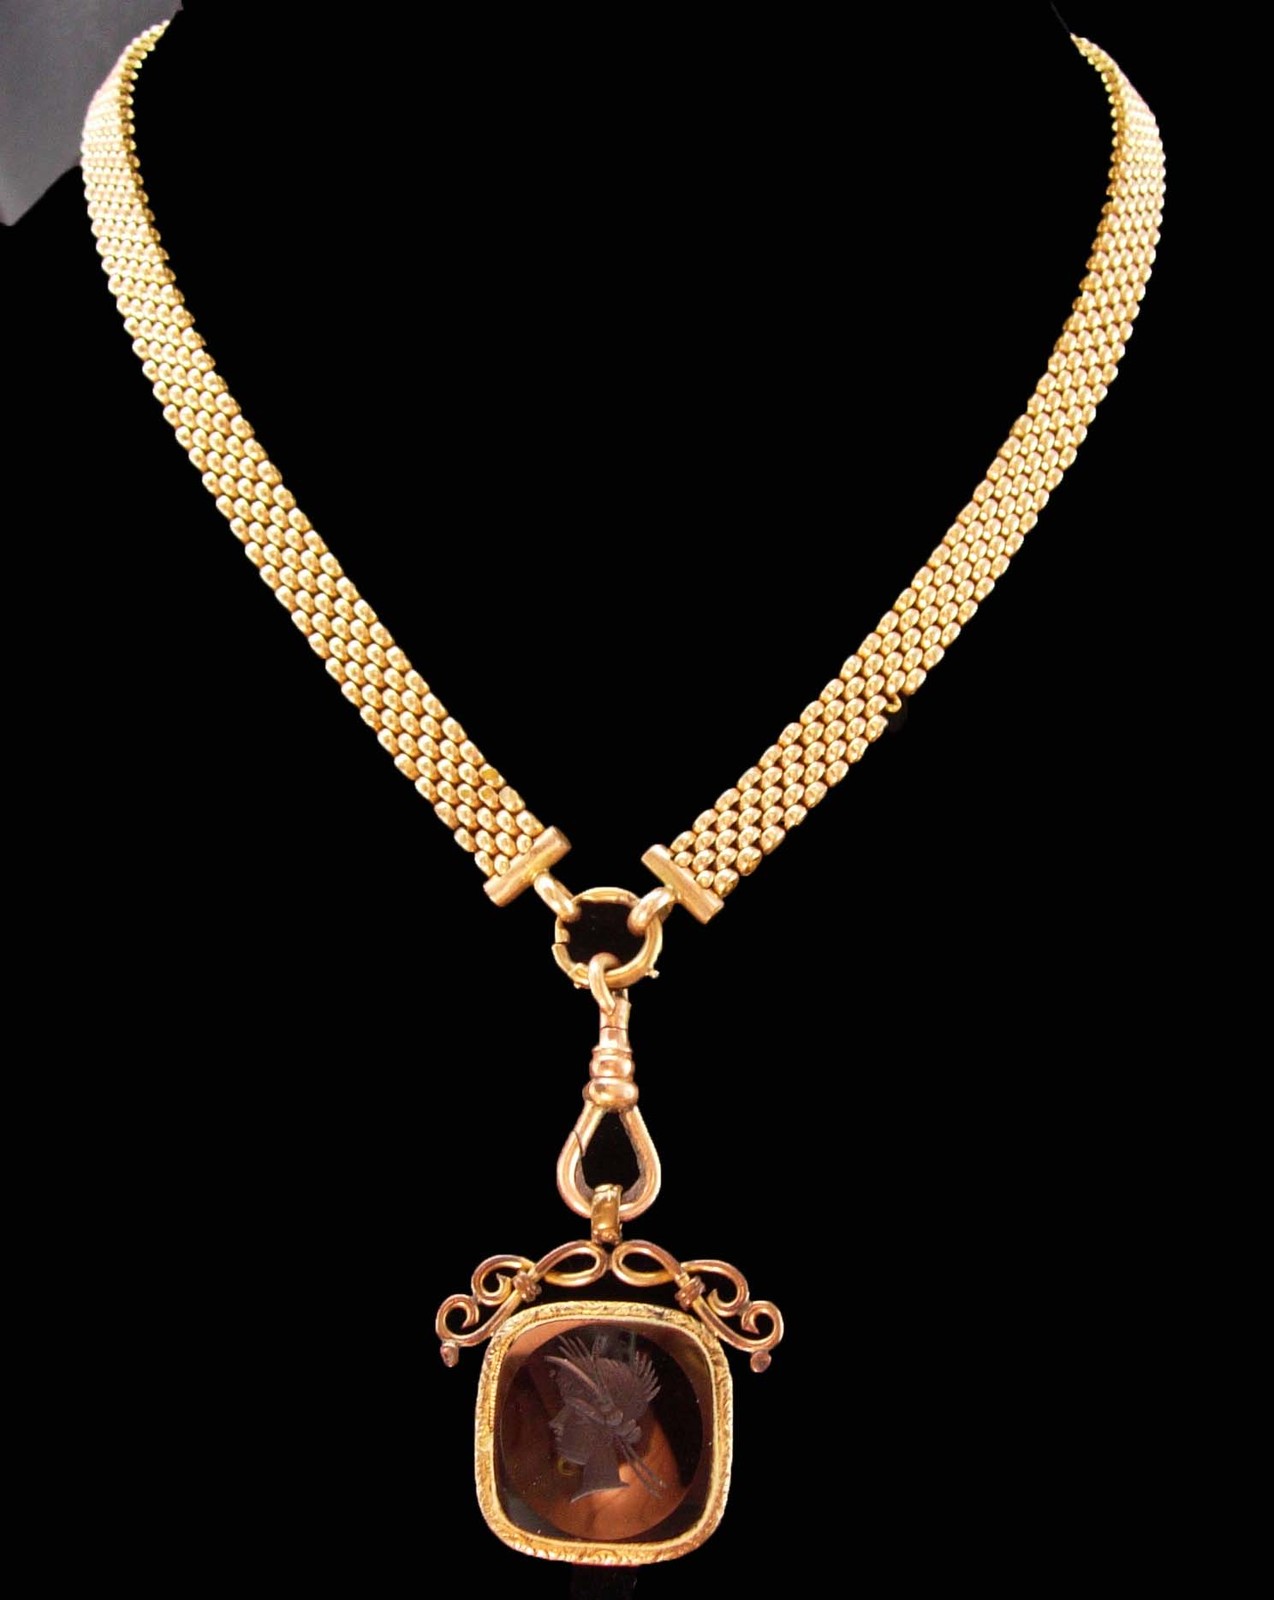 Antique Victorian intaglio Fob necklace - Pocketwatch wide chain - antique centu - $575.00